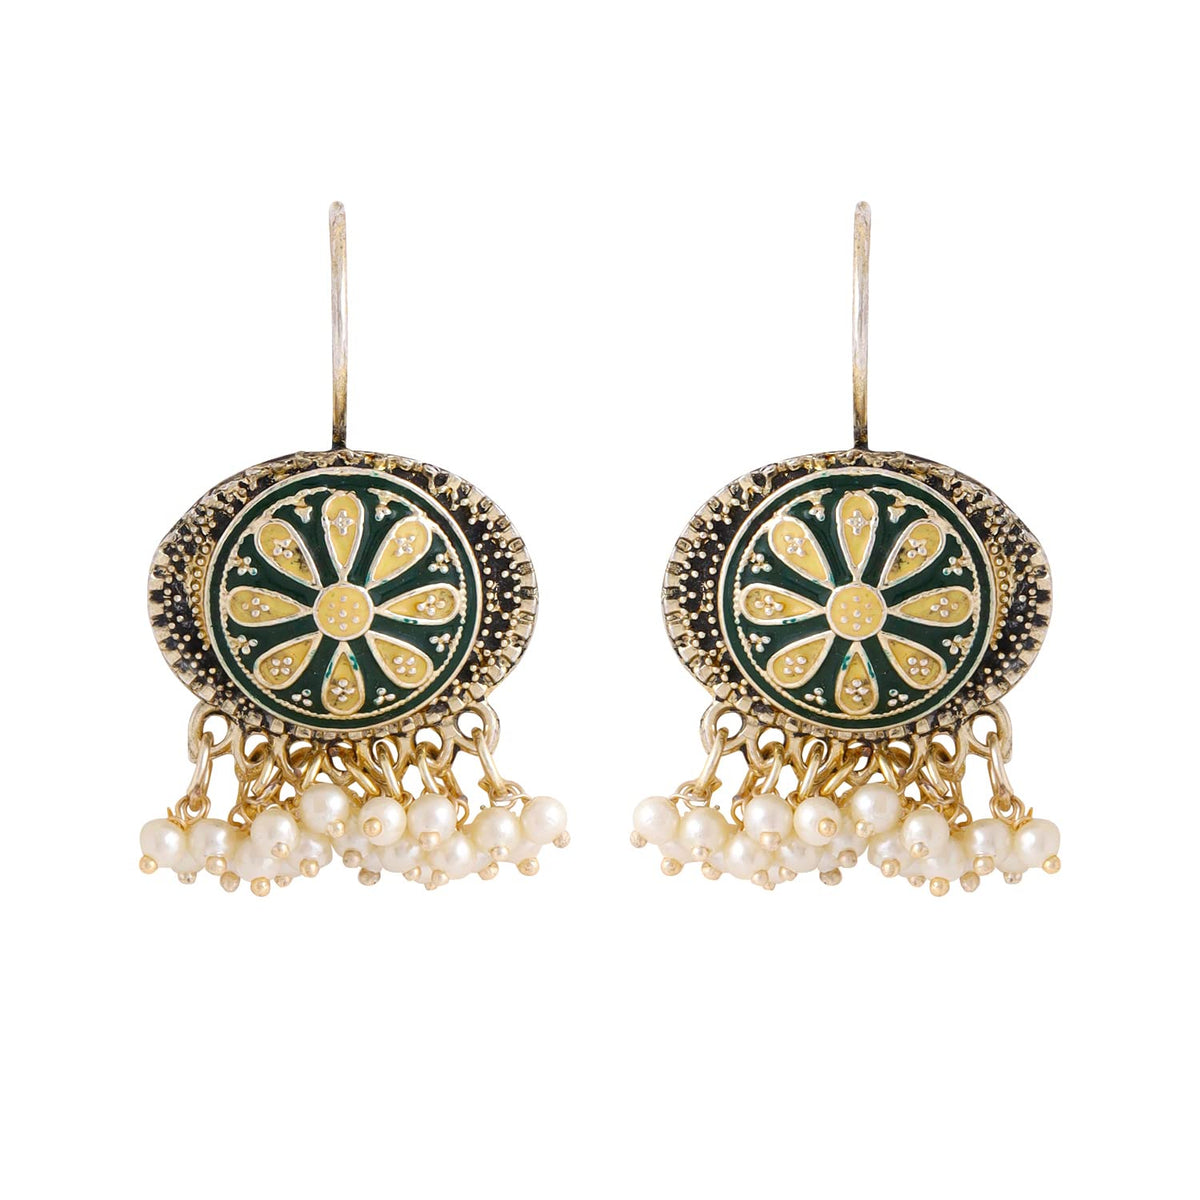 Yellow Chimes Earrings for Women and Girls Meenakari Chandbali | Gold Plated Green Meenakari Chandbali Earrings | Birthday Gift for girls and women Anniversary Gift for Wife